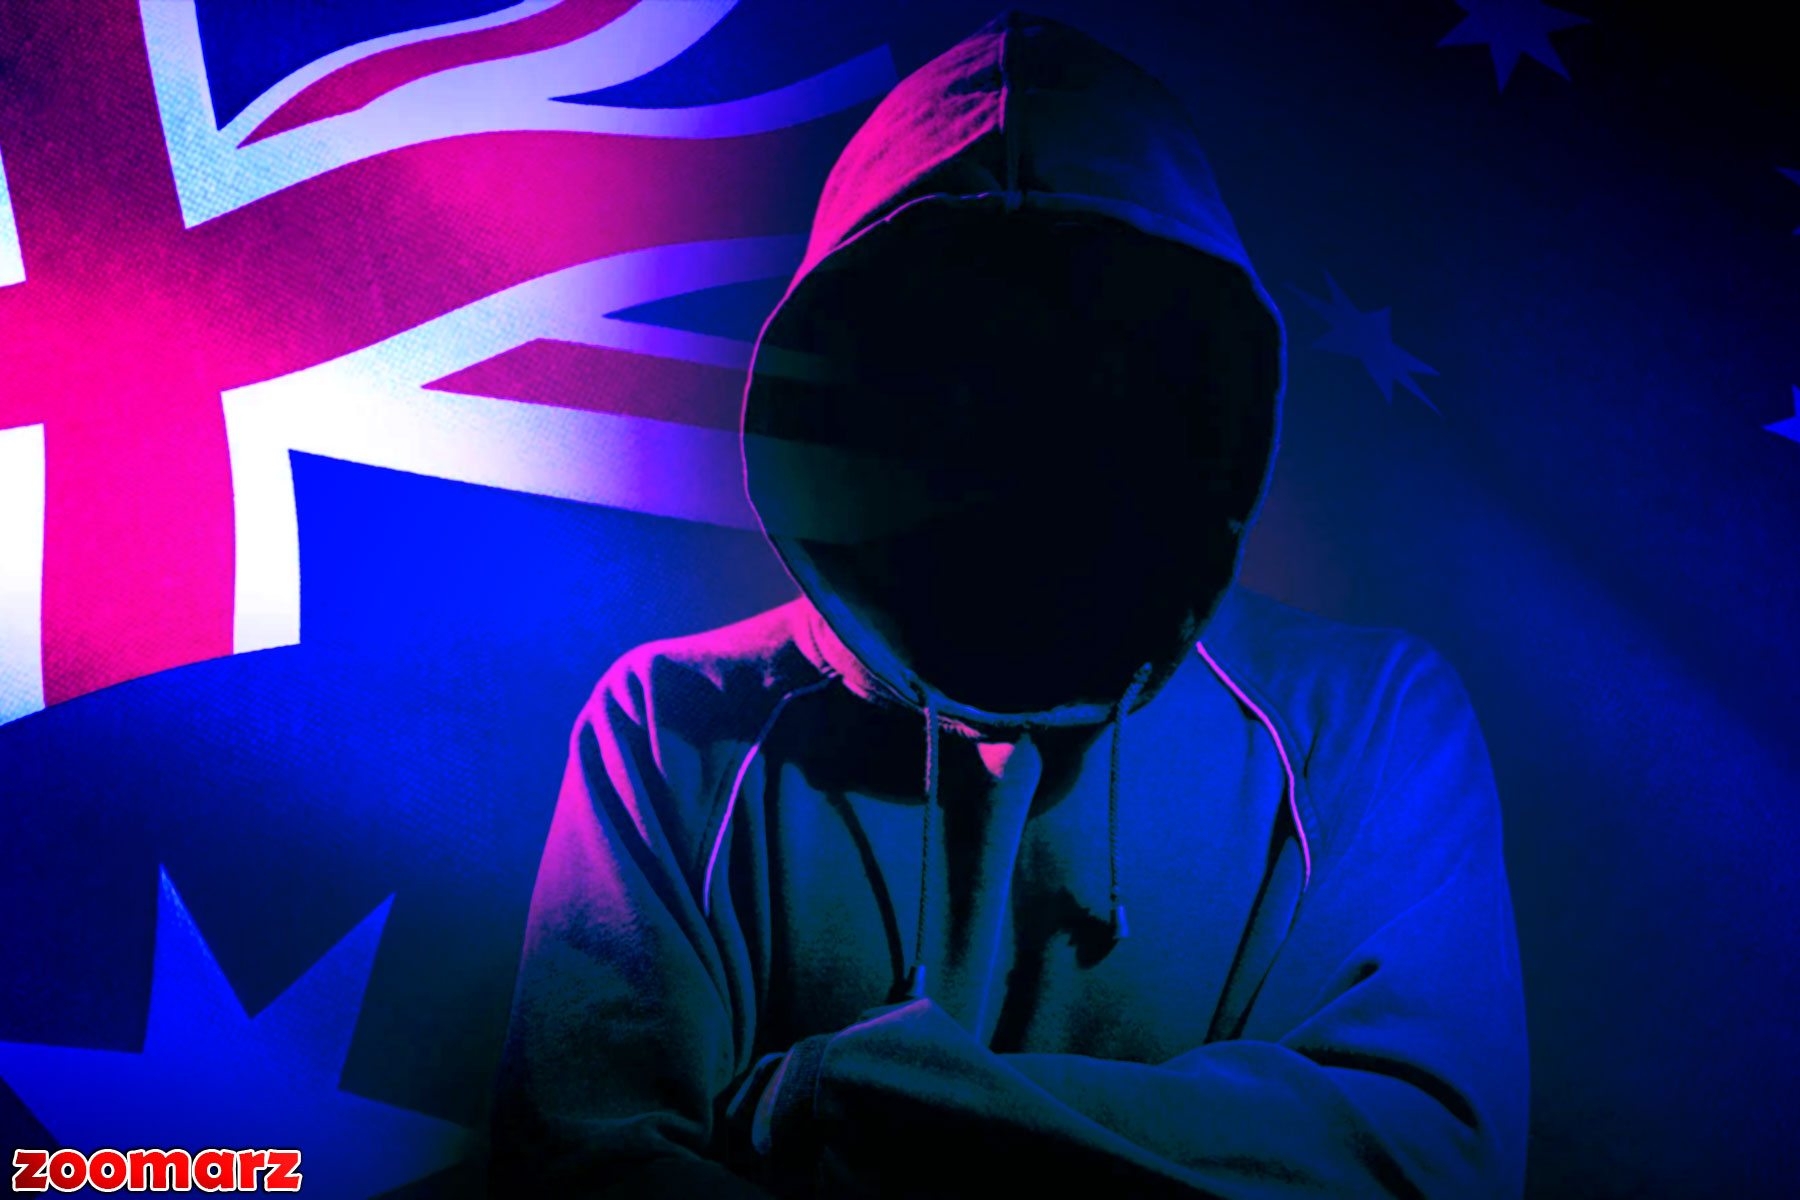 مرد استرالیایی پس از دریافت ۵۰۰۰۰۰ دلار رمزنگاری به طور اشتباه، ناپدید شد!😐